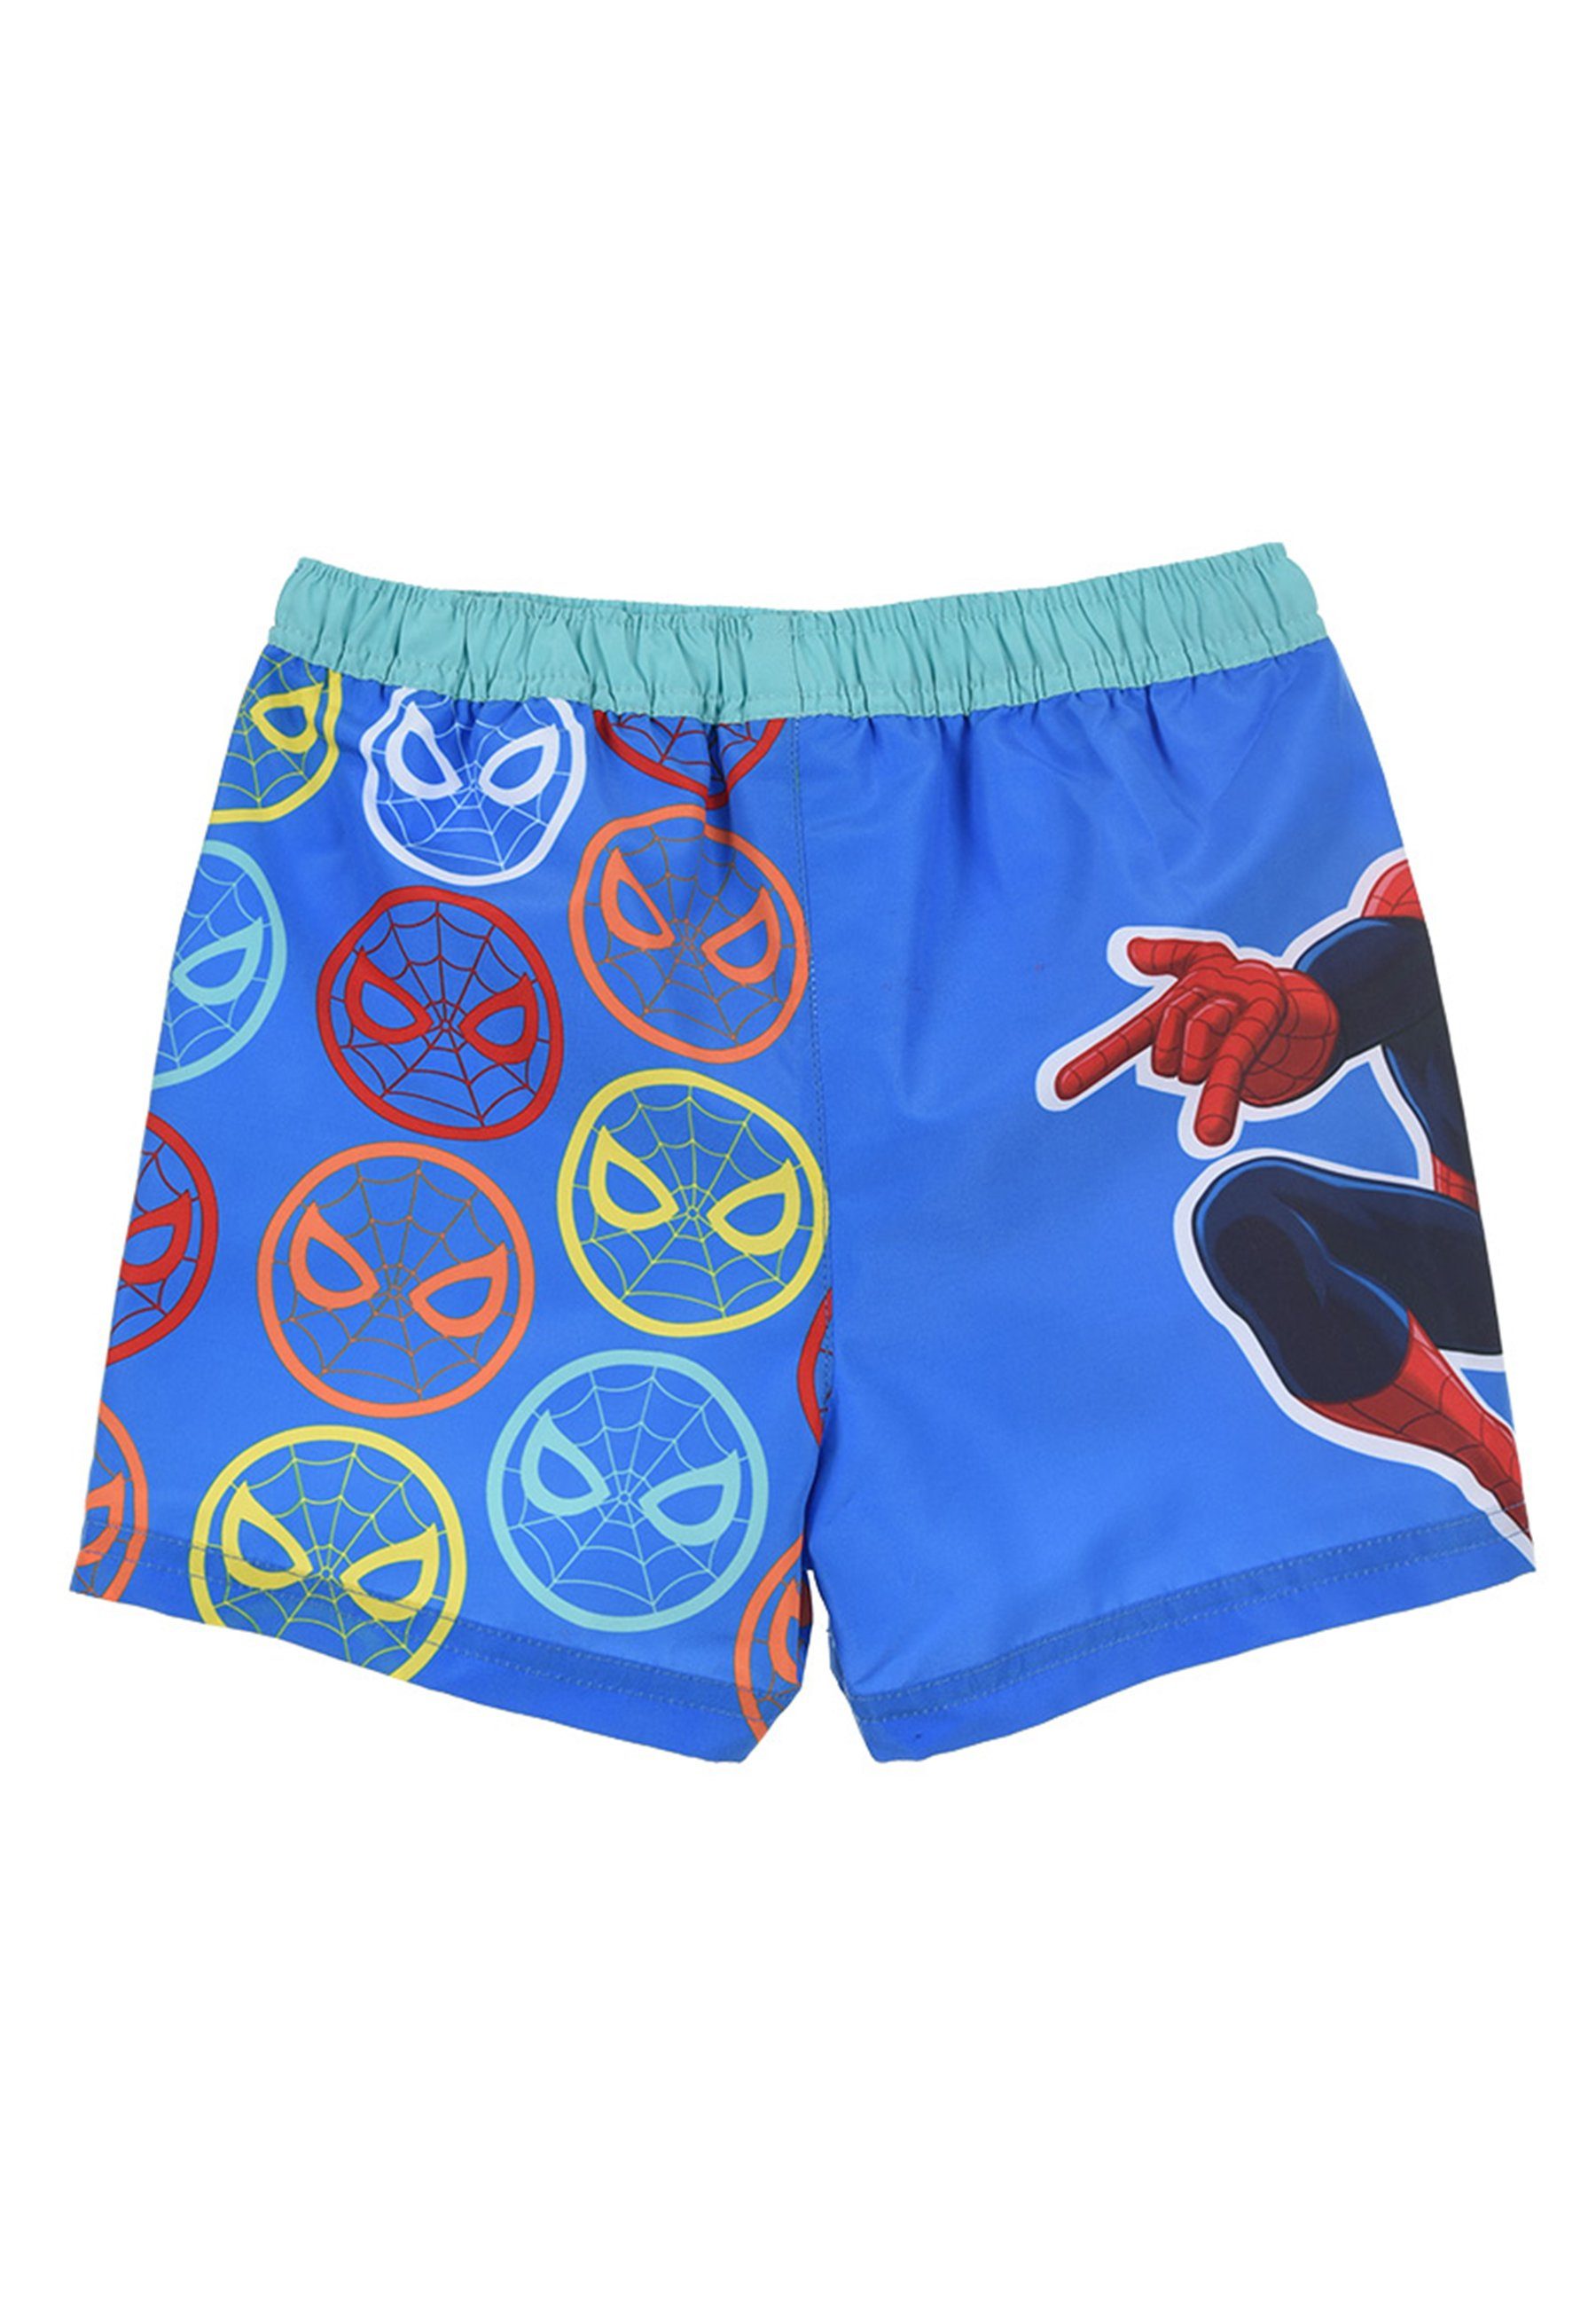 Jungen Badehose Marvel Badepants Badeshorts Spiderman Blau Bermuda-Shorts Kinder